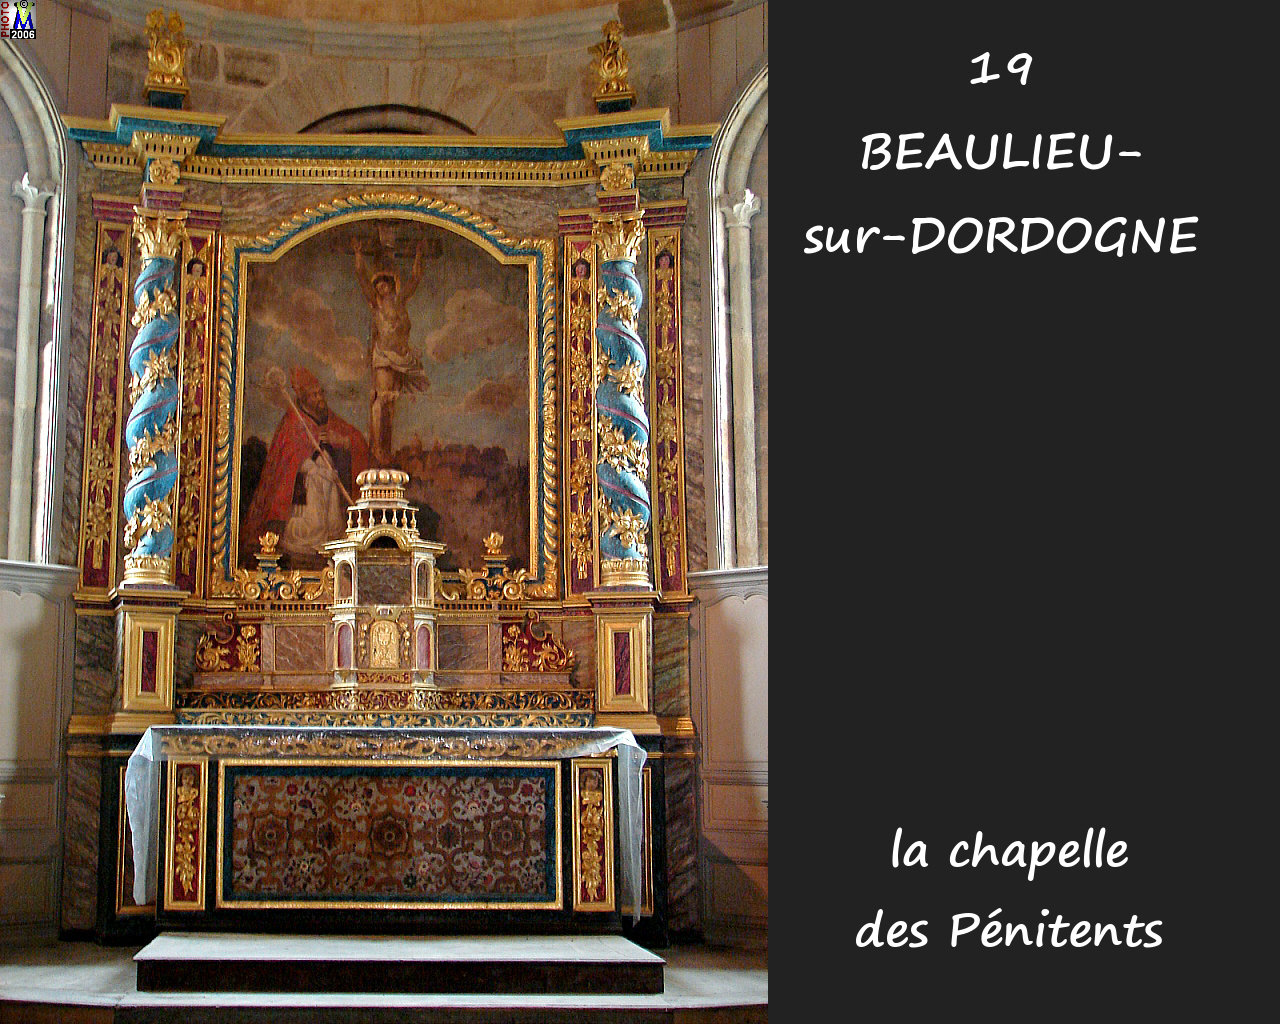 19BEAULIEU-DORDOGNE_chapelle_206.jpg